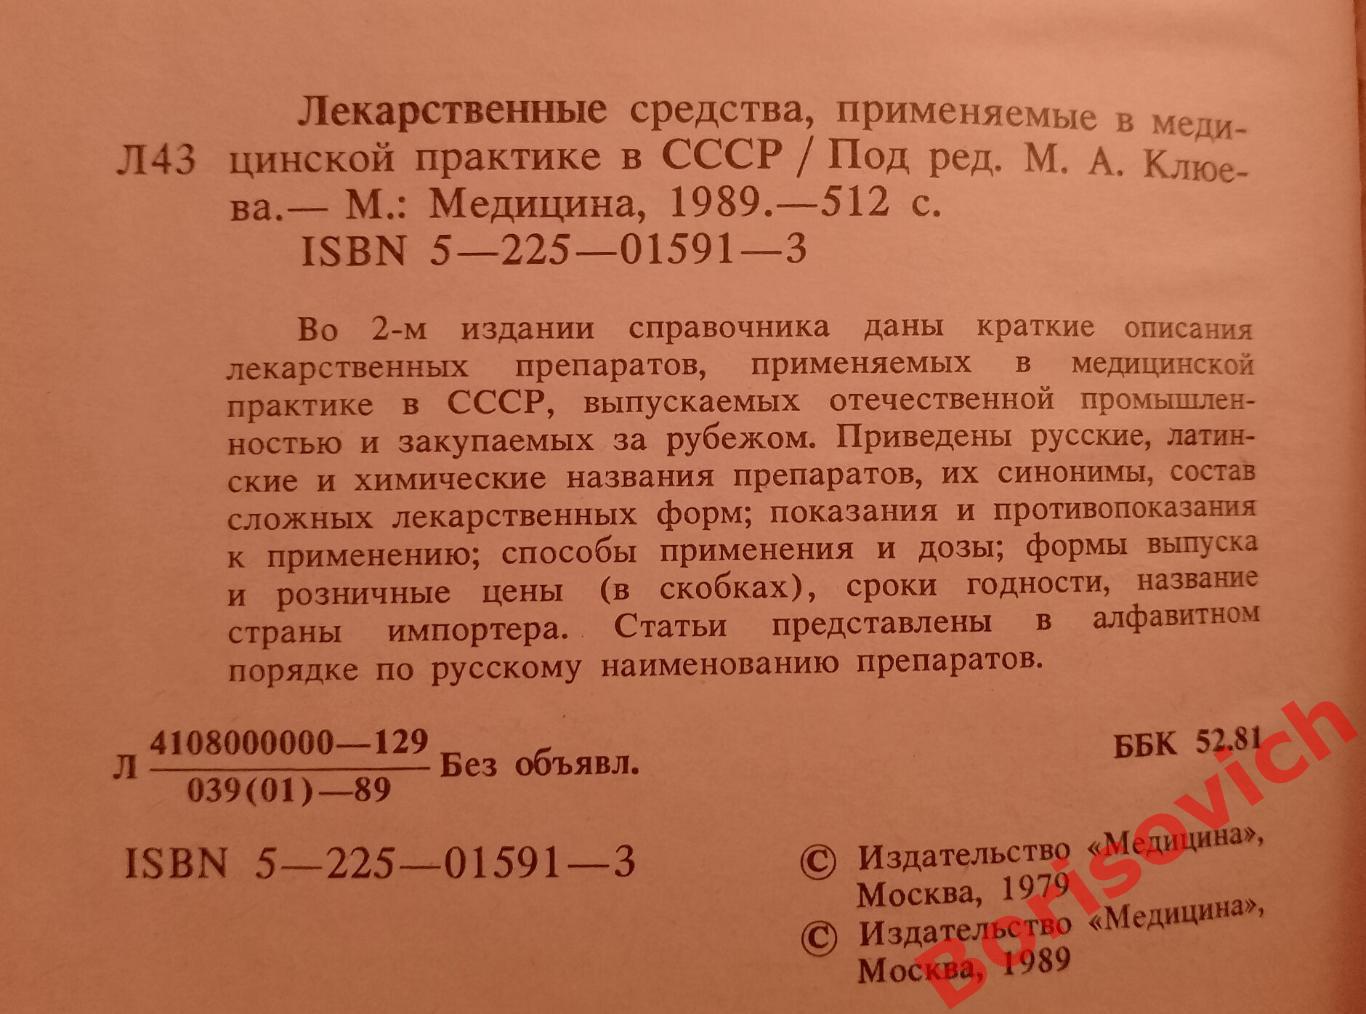 СПРАВОЧНИК Лекарственные средства, применяемые в медицинской практике в СССР 1